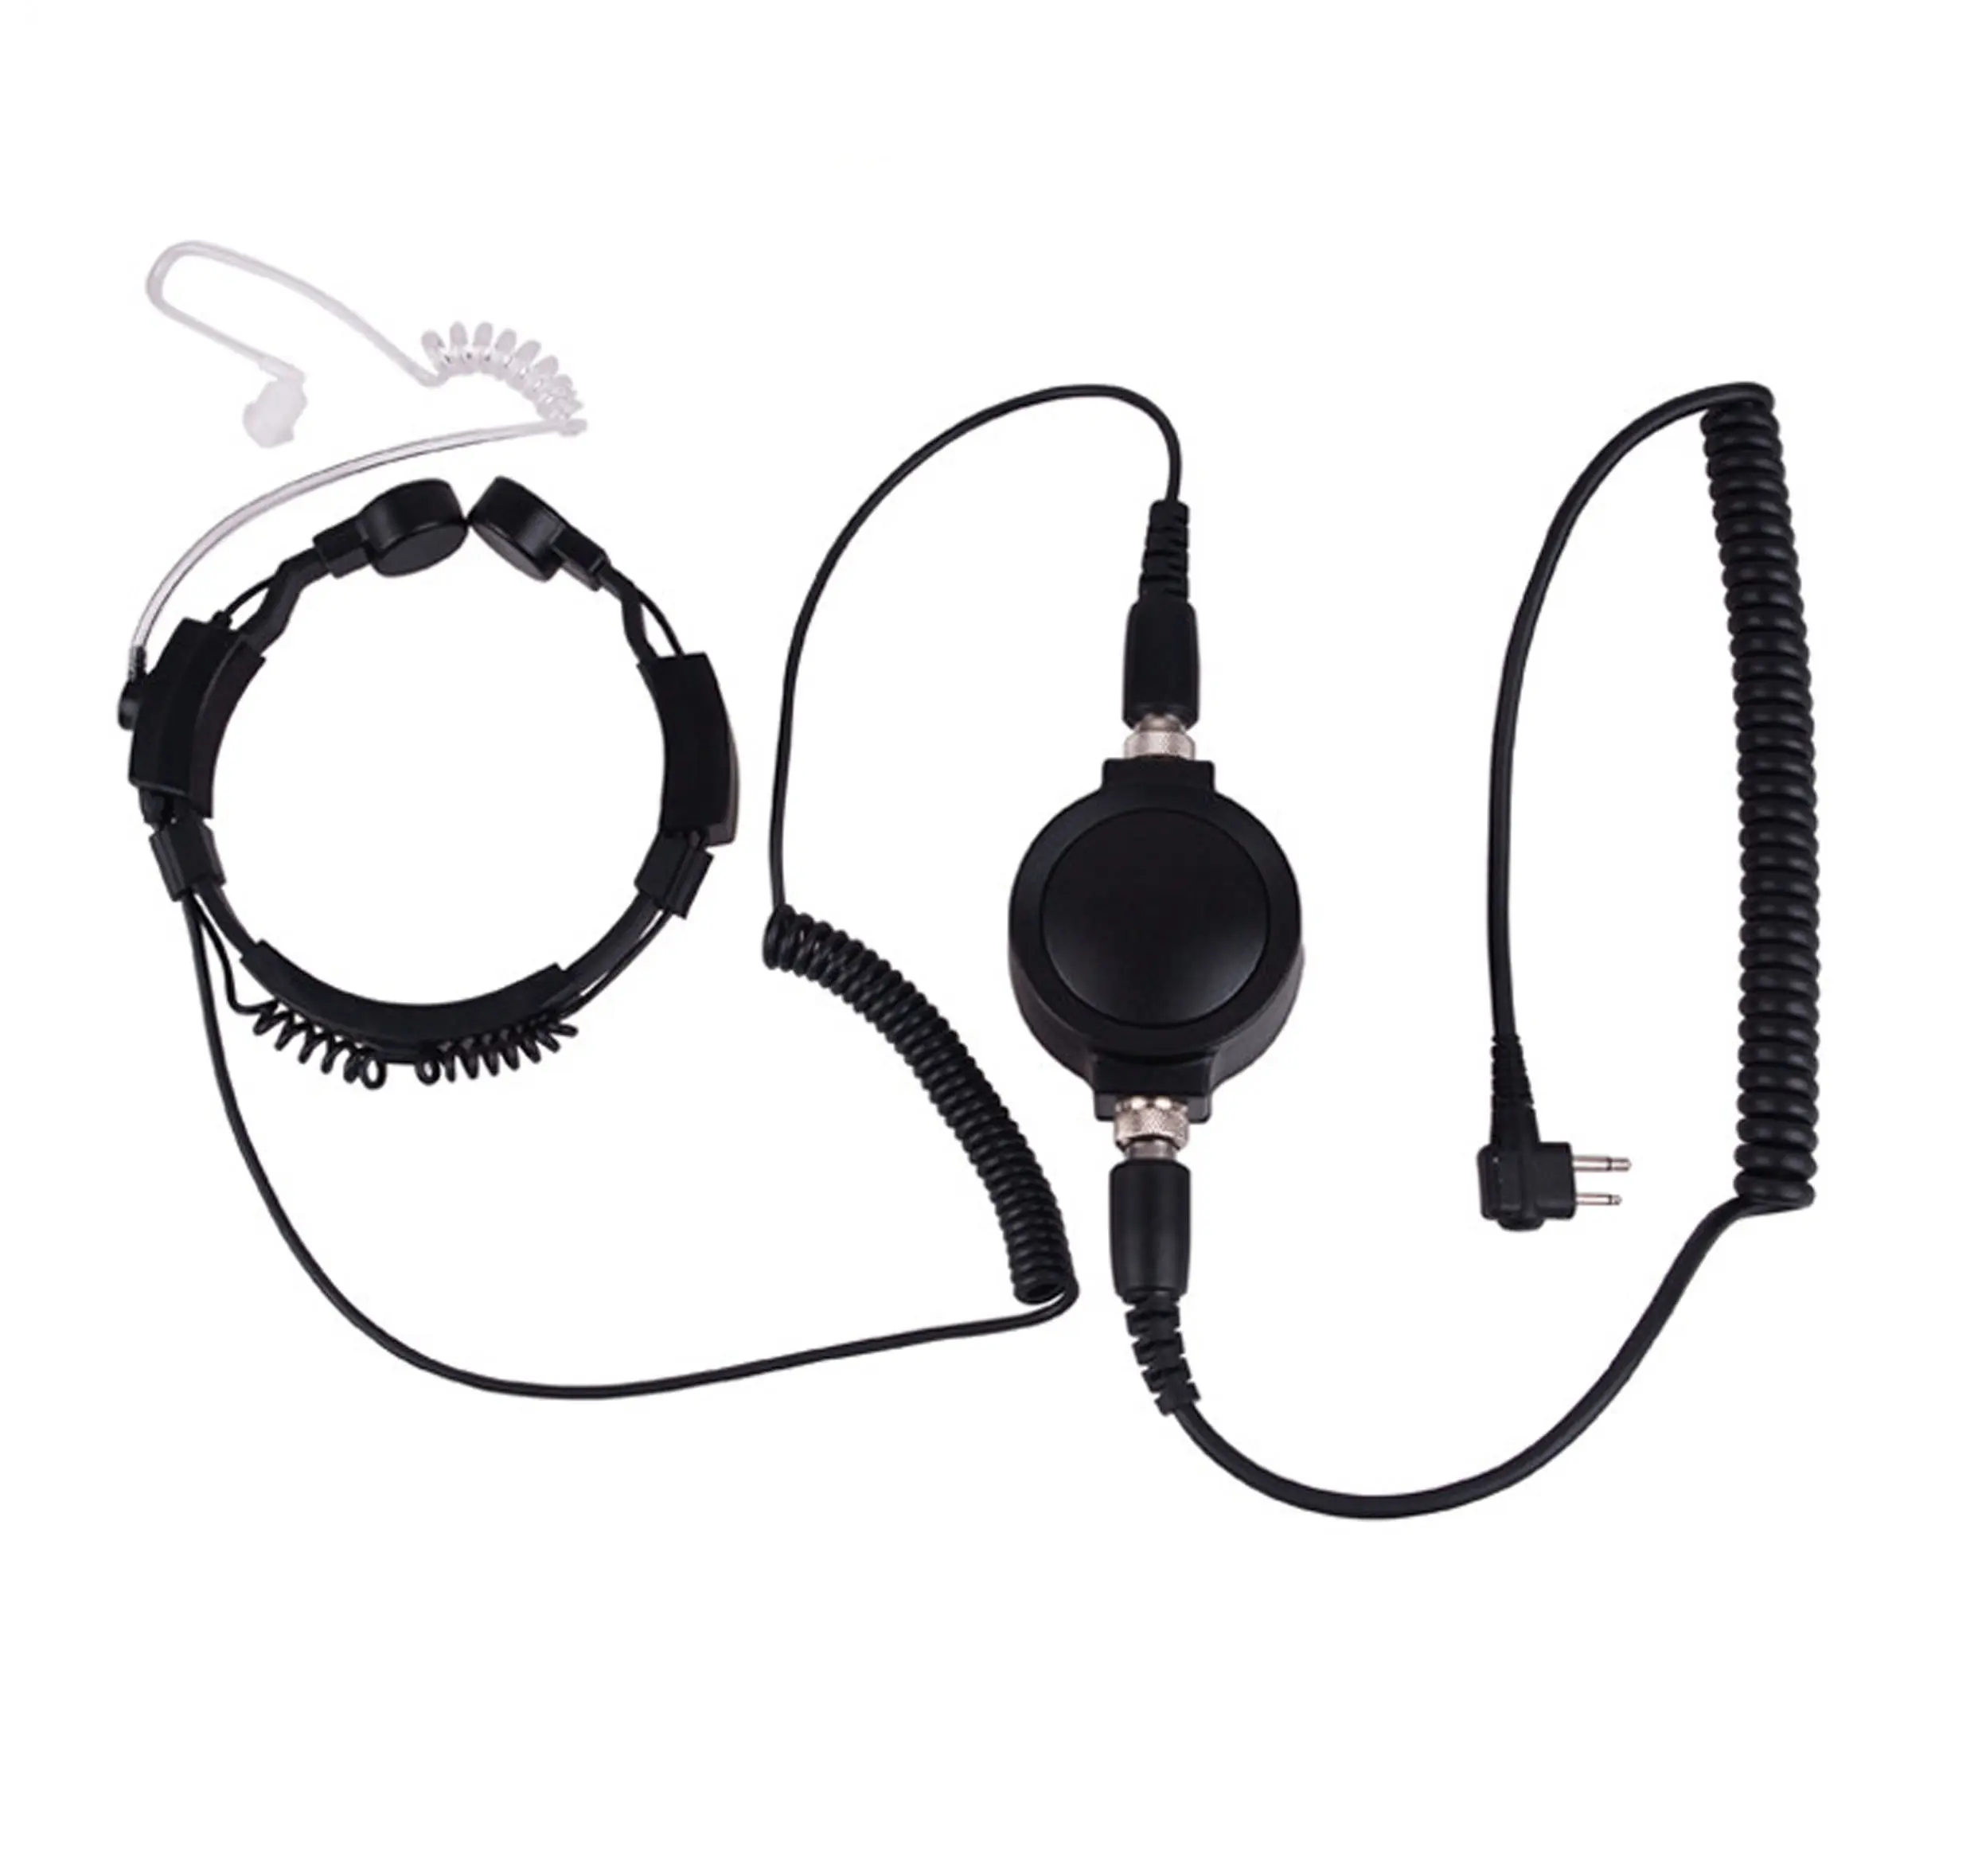 Earpiece tabung akustik mikrofon tenggorokan dengan tombol PTT besar dan mikrofon untuk CP100 CP125 SU210 walkie talkie